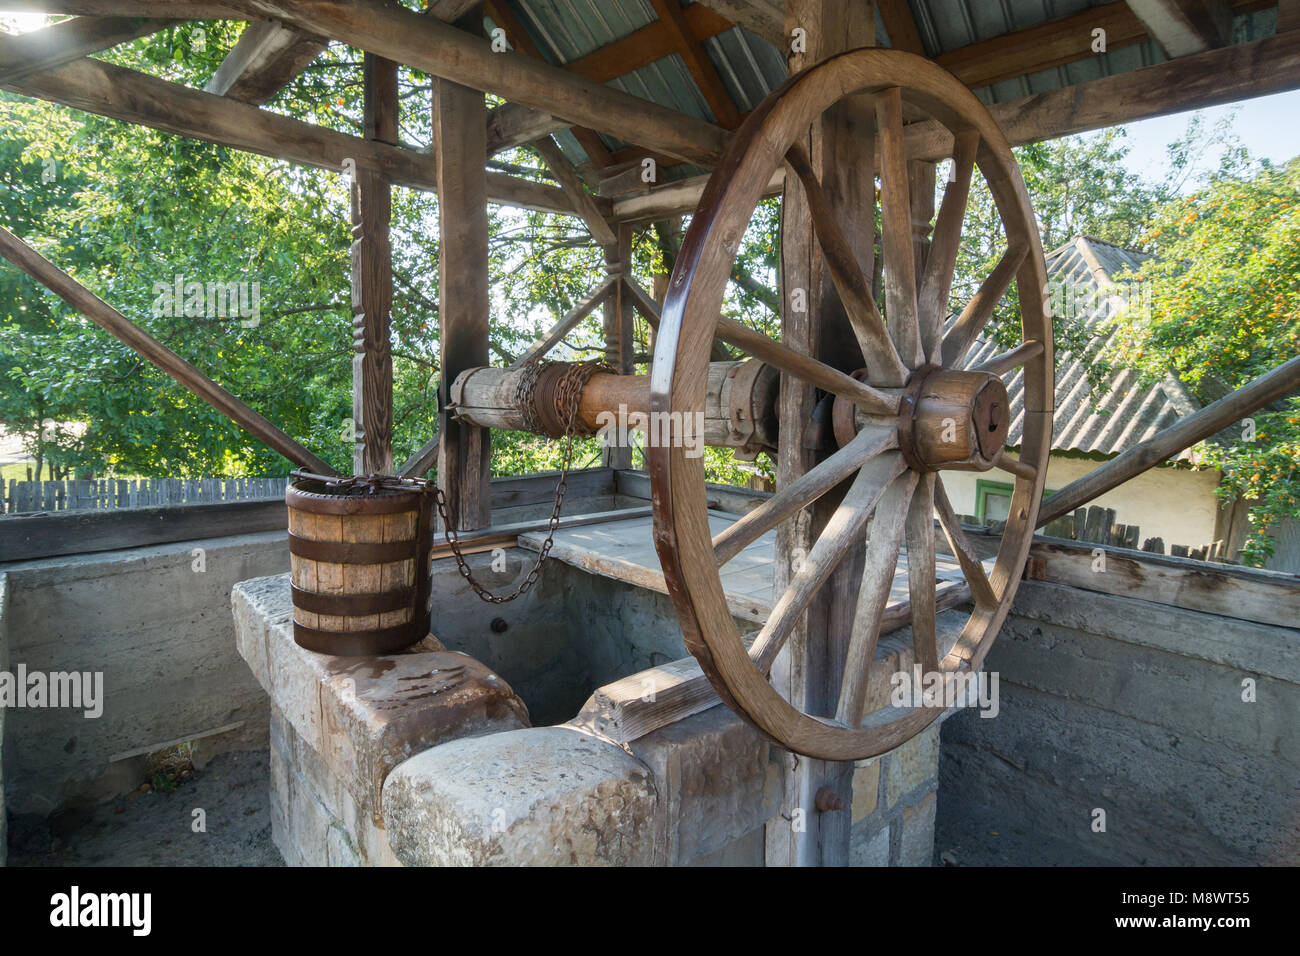 Vieux,en bois traditionnel, bien avec une grande roue, d'une chaîne et le godet à la campagne de Roumanie Banque D'Images